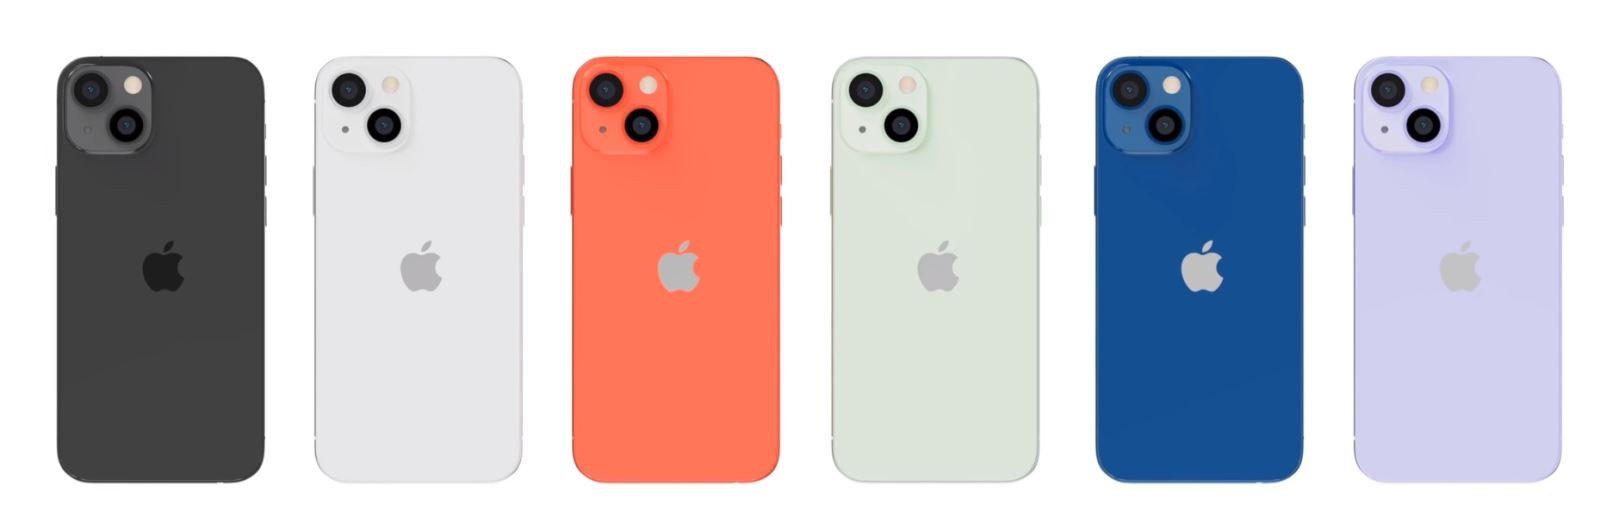 iPhone 13 mini có mấy màu?